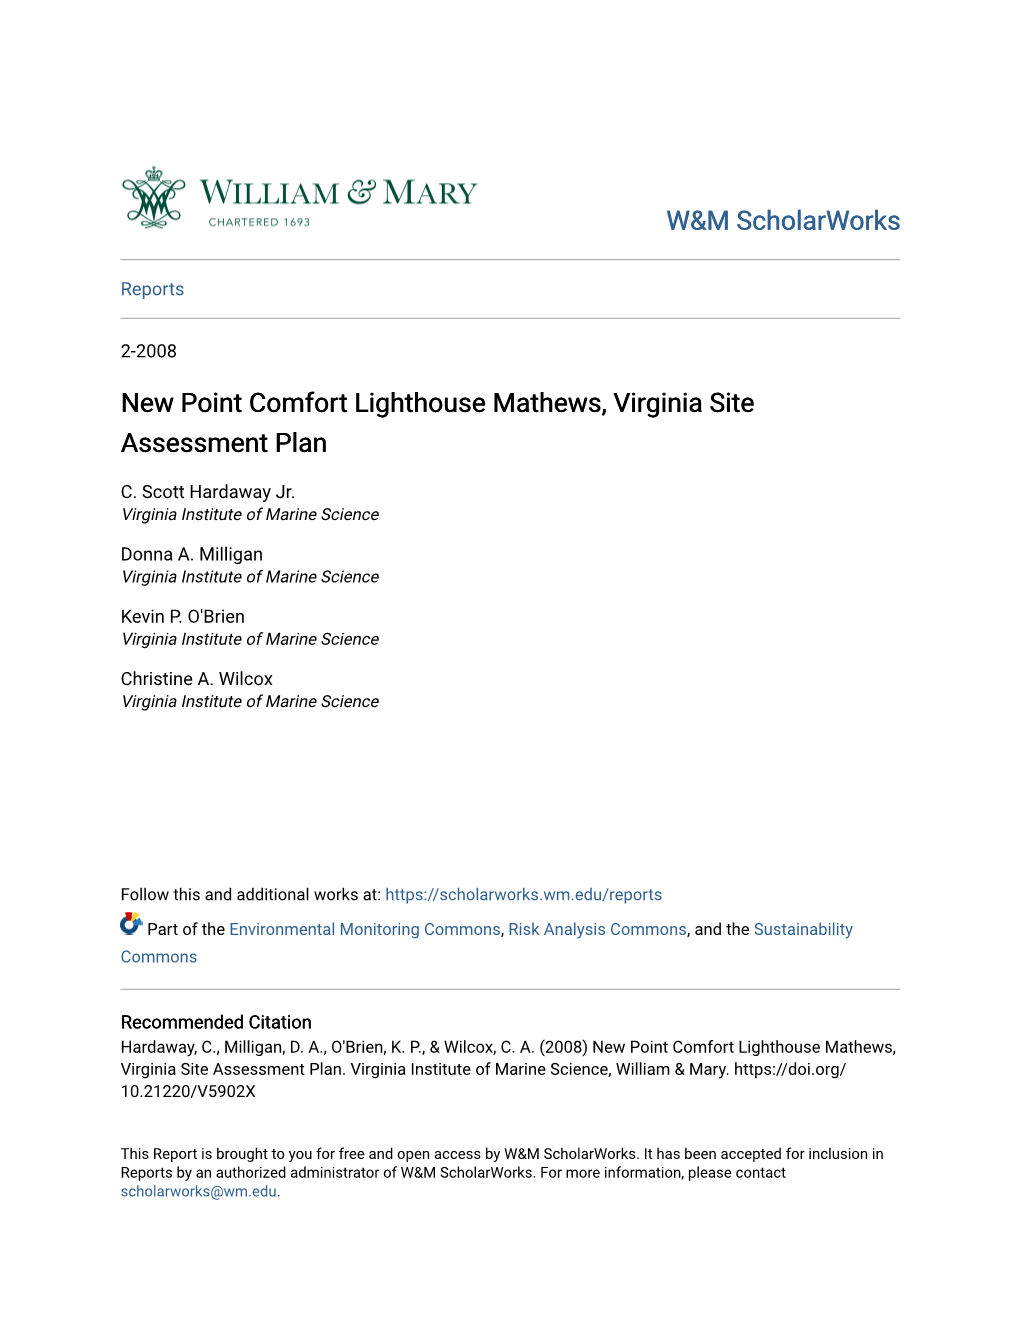 New Point Comfort Lighthouse Mathews, Virginia Site Assessment Plan